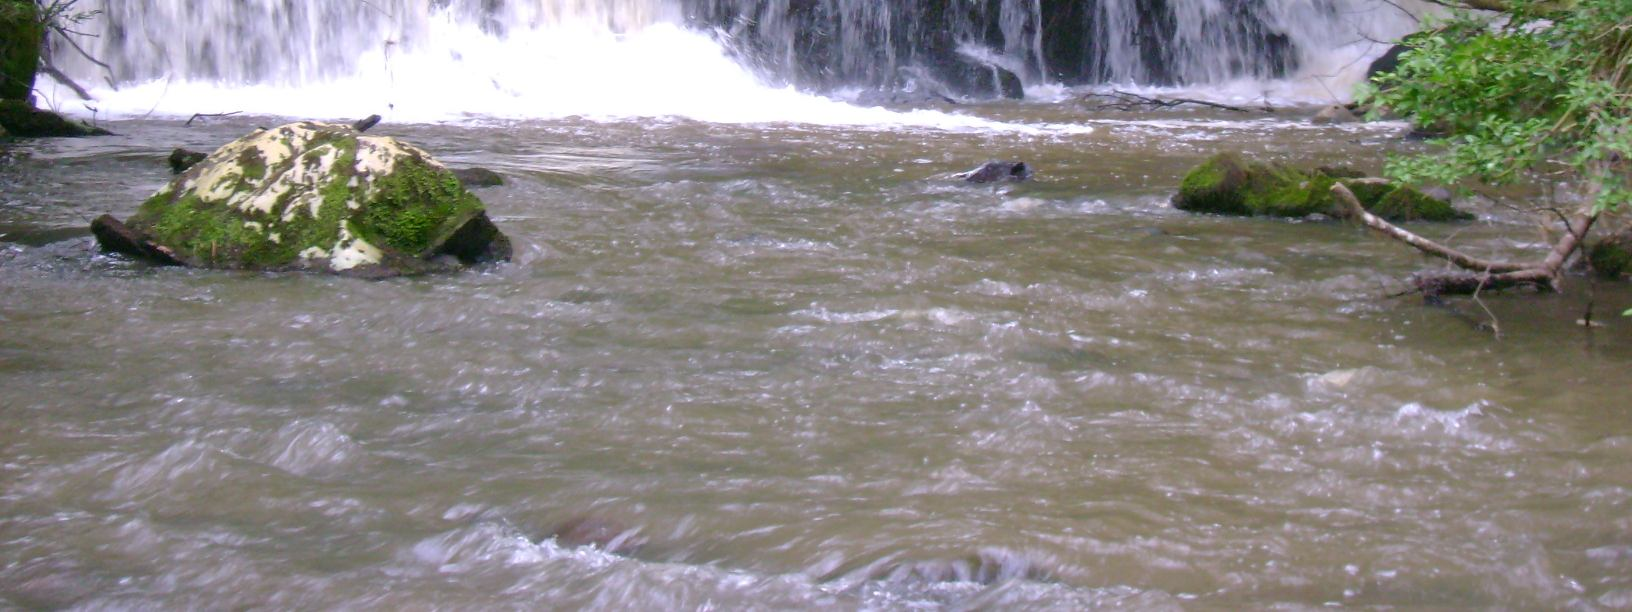 A Avaliação biológica realizada em 2012 para os rios Trigal e Charqueada demonstraram nos quatro pontos amostrais grande diversidade biológica referente a organismos aquáticos bioindicadores, isto se